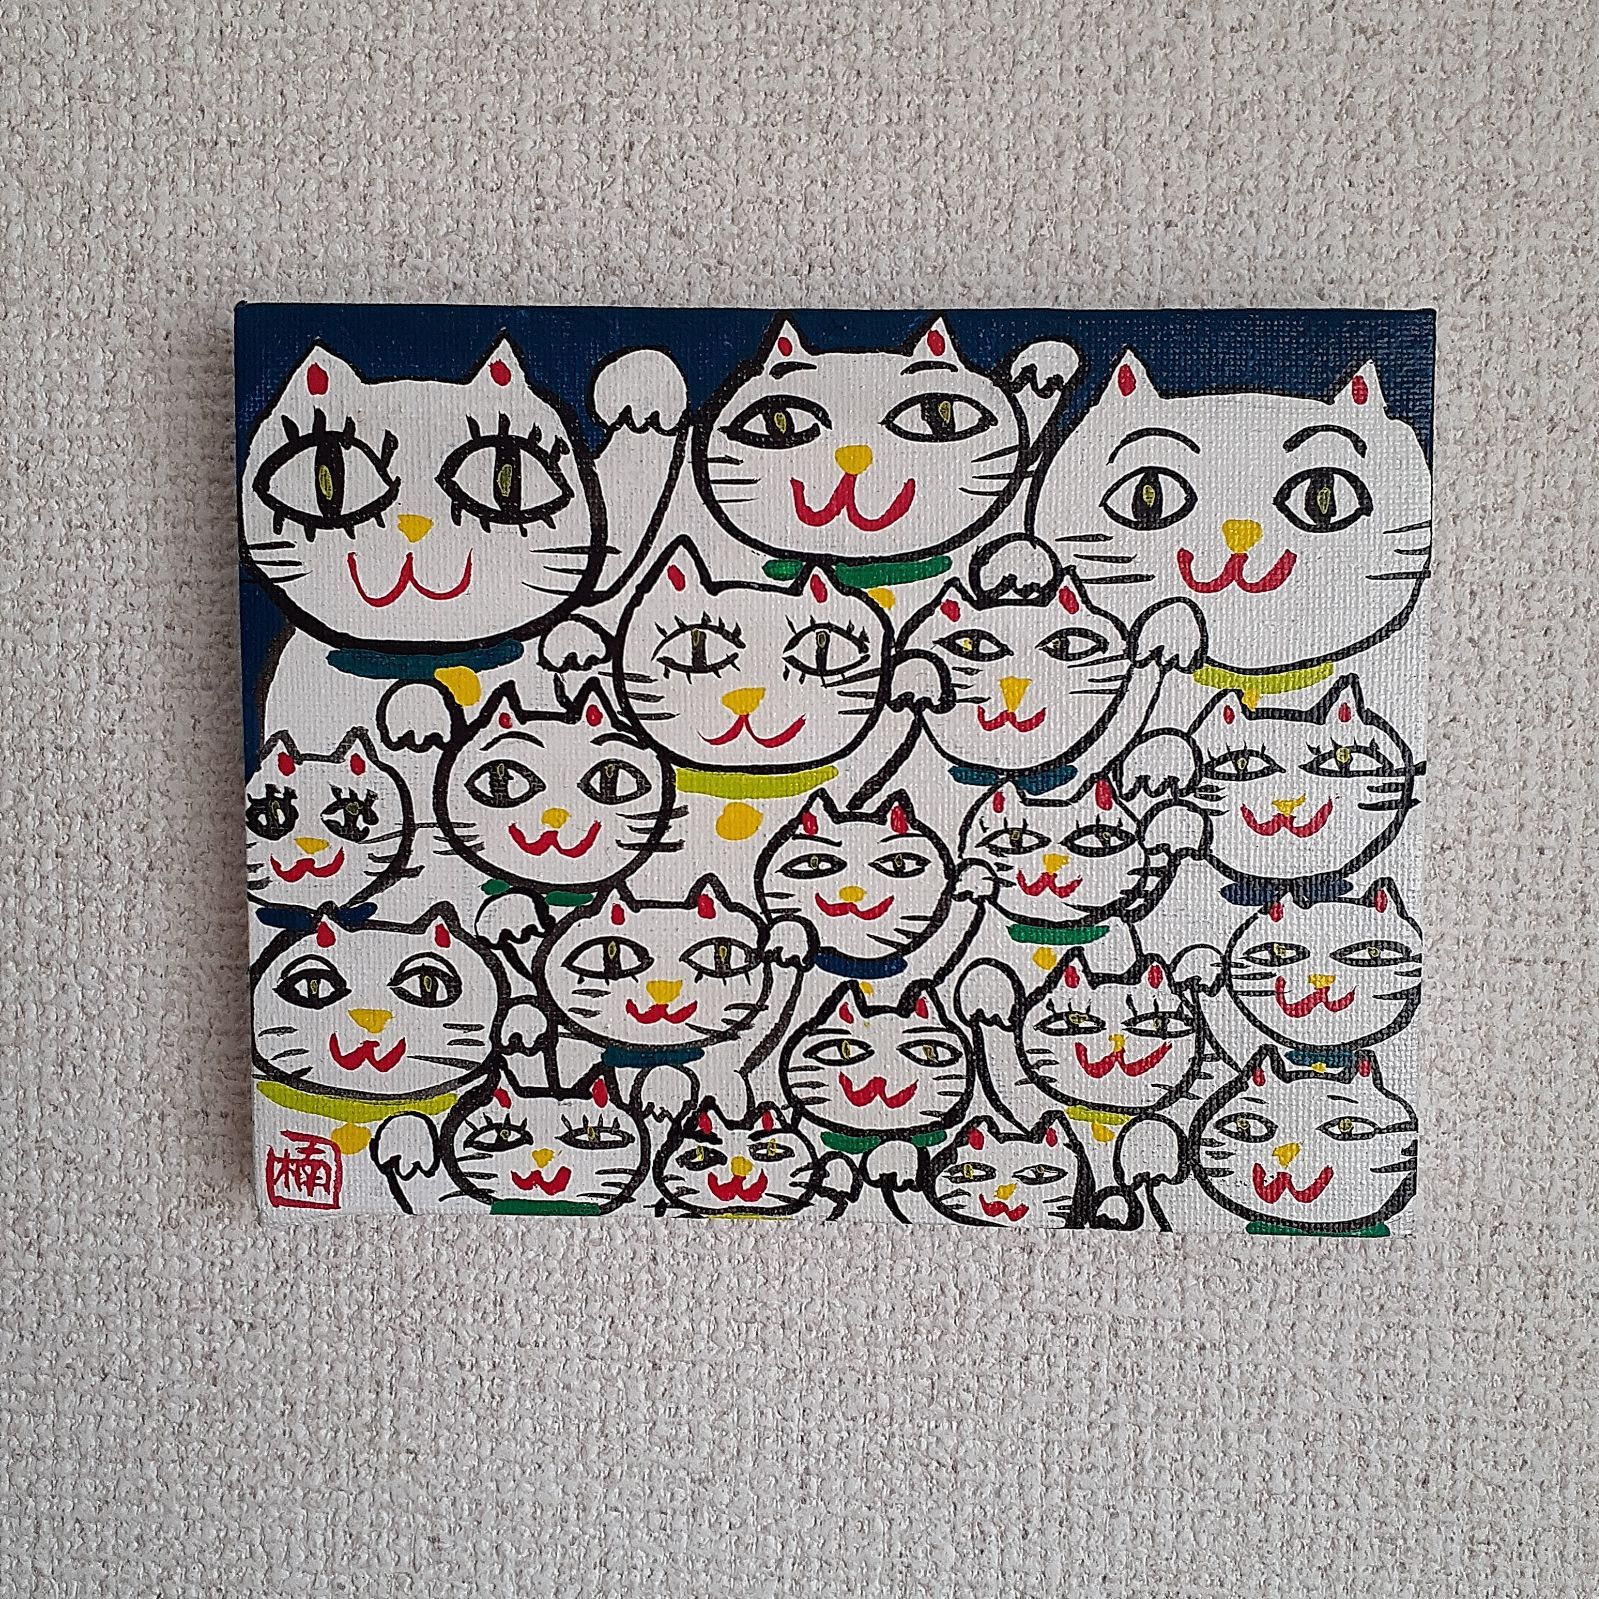 ハッピー開運招き猫 新、緑だらけのシリーズ 画家小楠アキコ作品 F0号